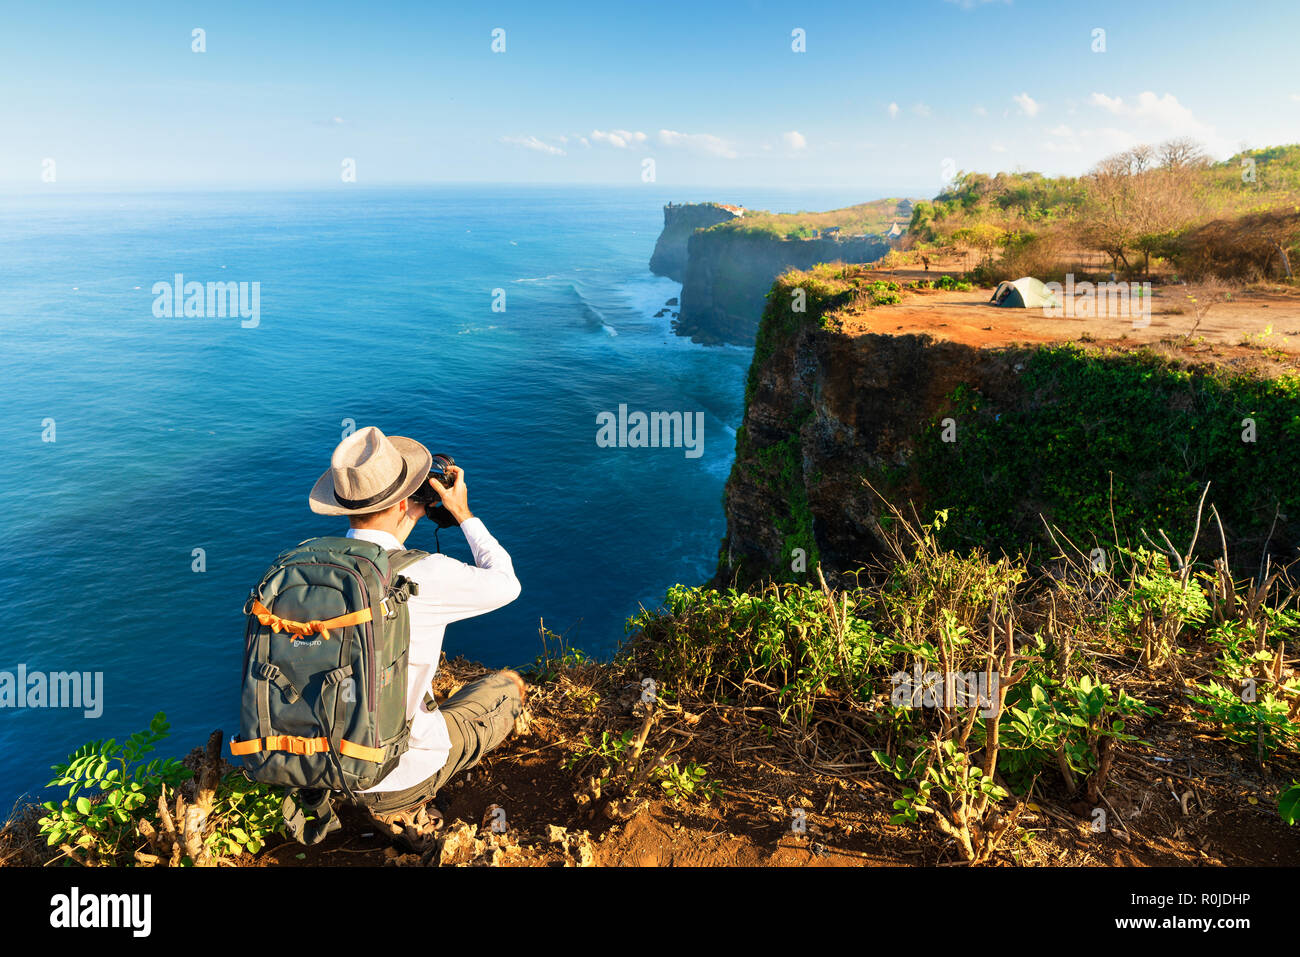 Fotografo in viaggio con fotocamera e foto zaino LovePro su top mountain cliff in background scenic natura paesaggio isola tropicale Foto Stock